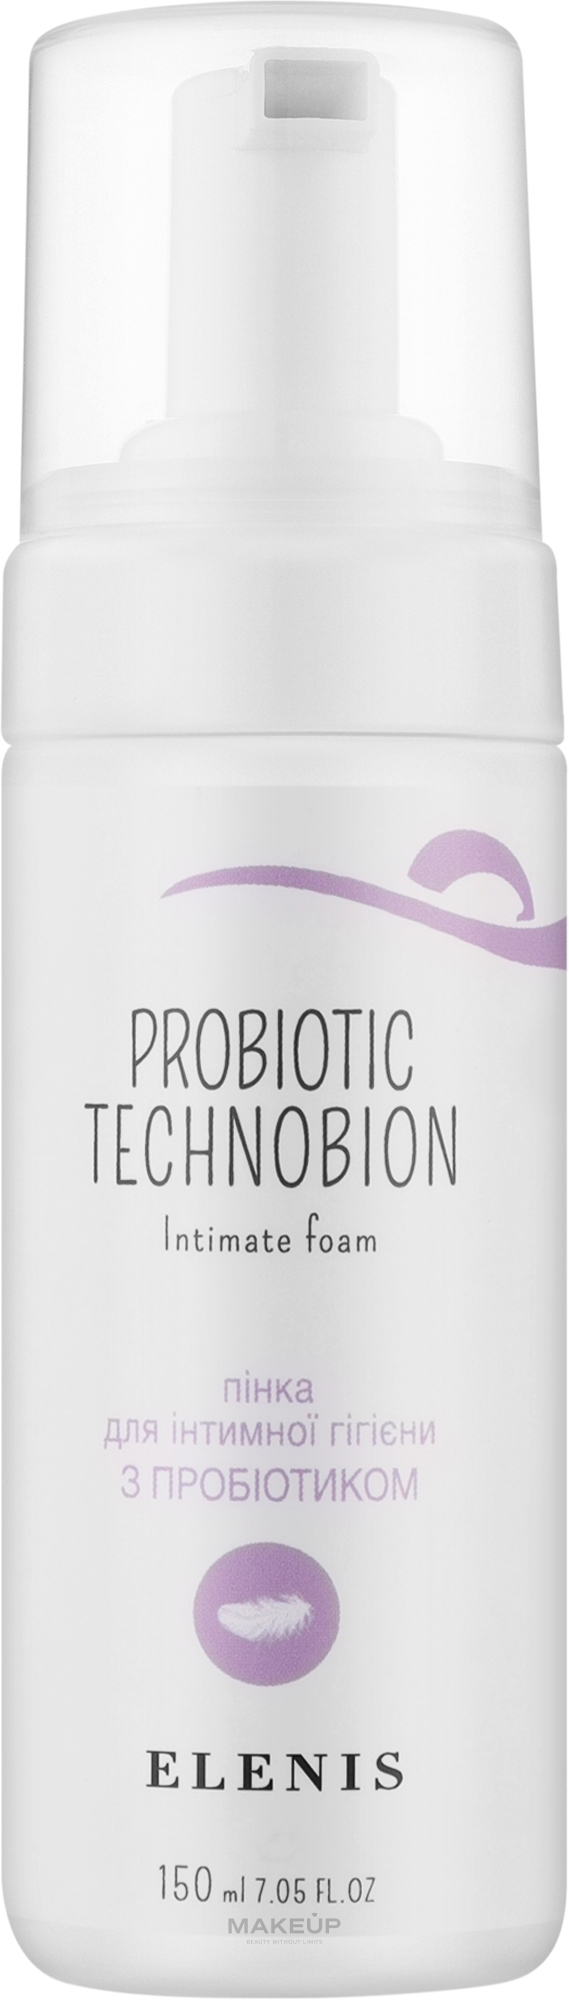 Пенка для интимной гигиены с пробиотиком - Elenis Probiotic Technobion Intimate Foam — фото 150ml